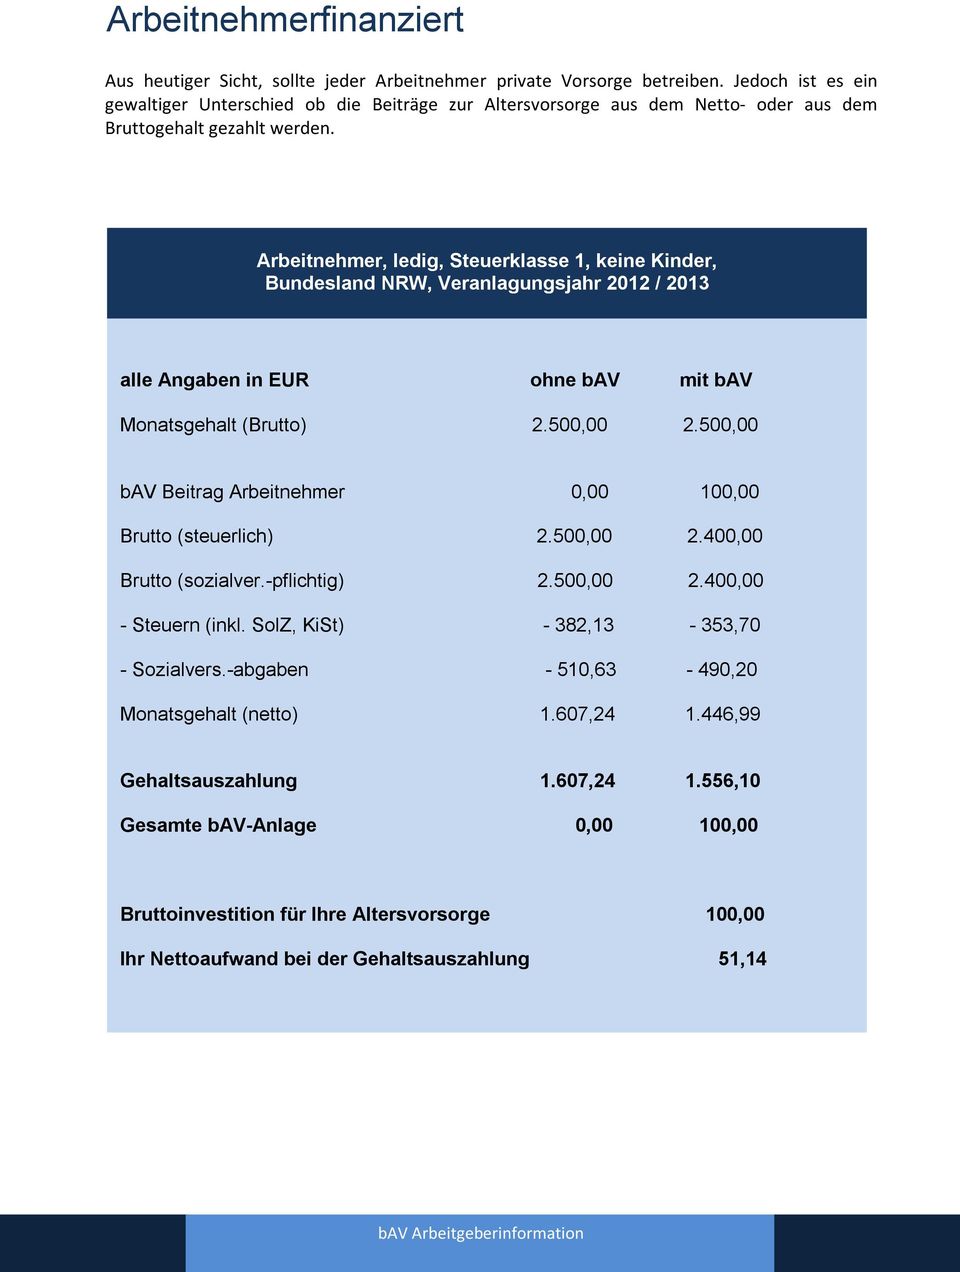 Arbeitnehmer, ledig, Steuerklasse 1, keine Kinder, Bundesland NRW, Veranlagungsjahr 2012 / 2013 alle Angaben in EUR ohne bav mit bav Monatsgehalt (Brutto) 2.500,00 2.